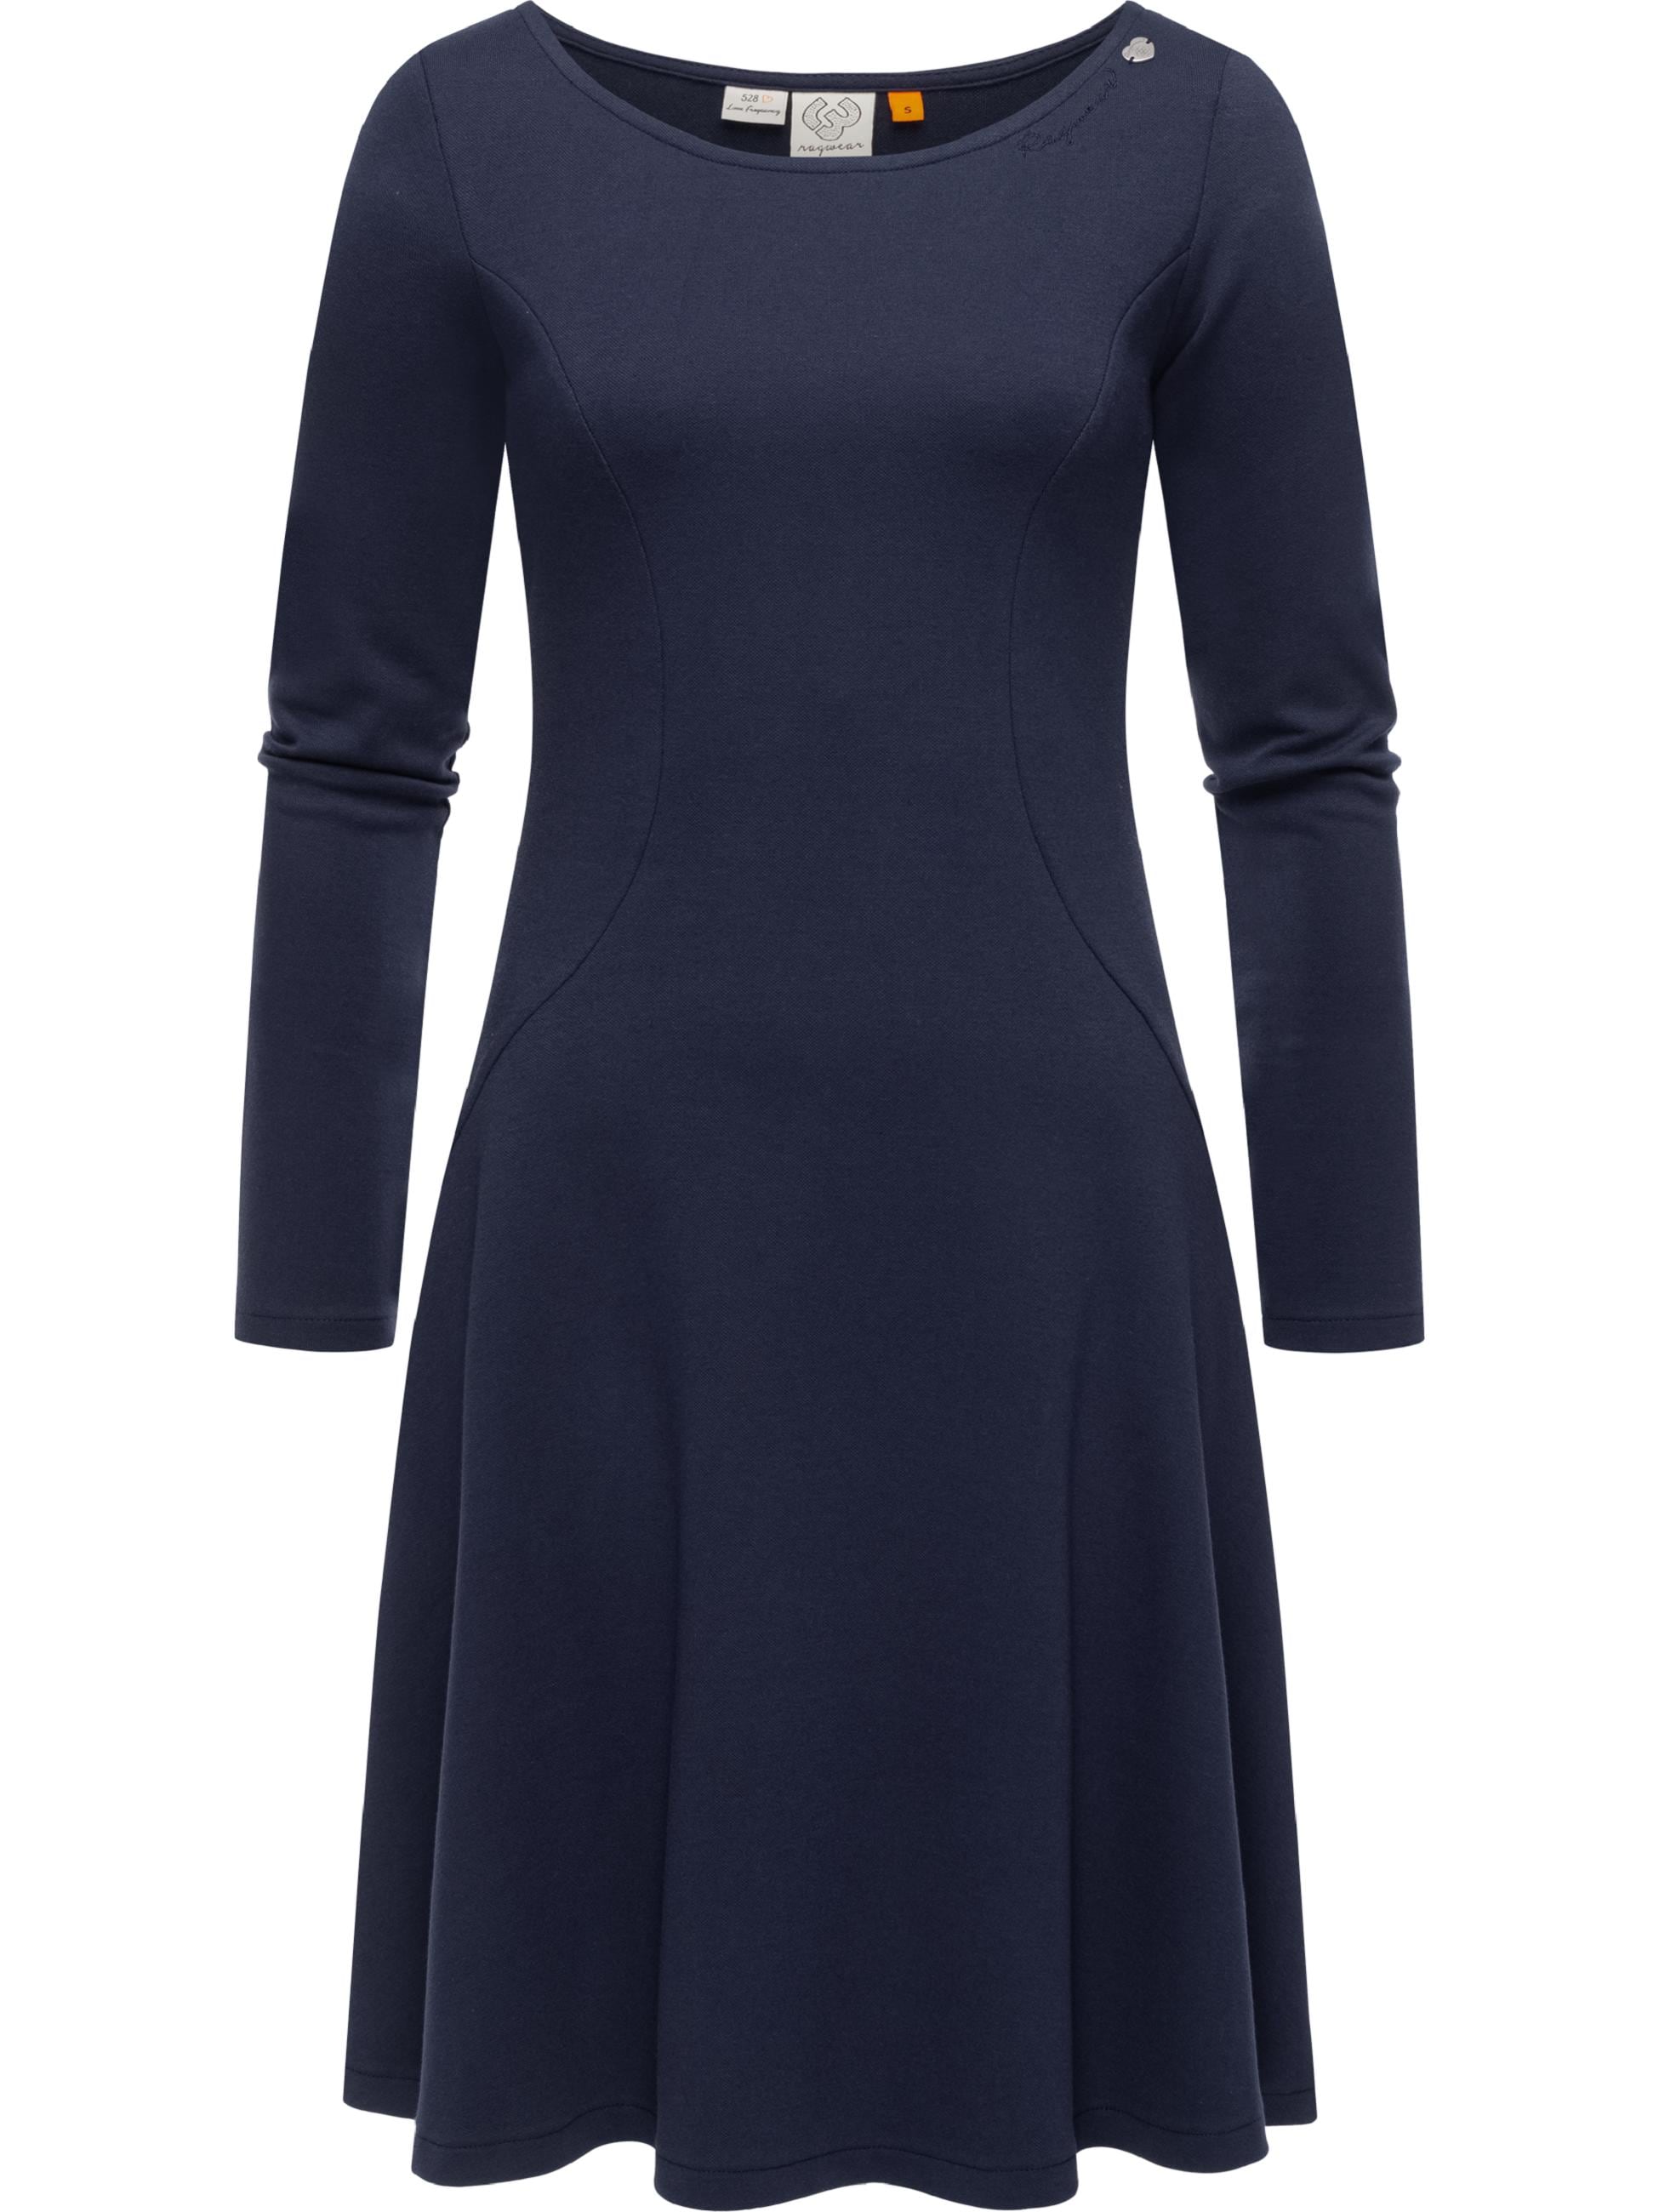 Jerseykleid »Jerseykleid Appero«, Stylisches Langarm-Kleid für den Winter